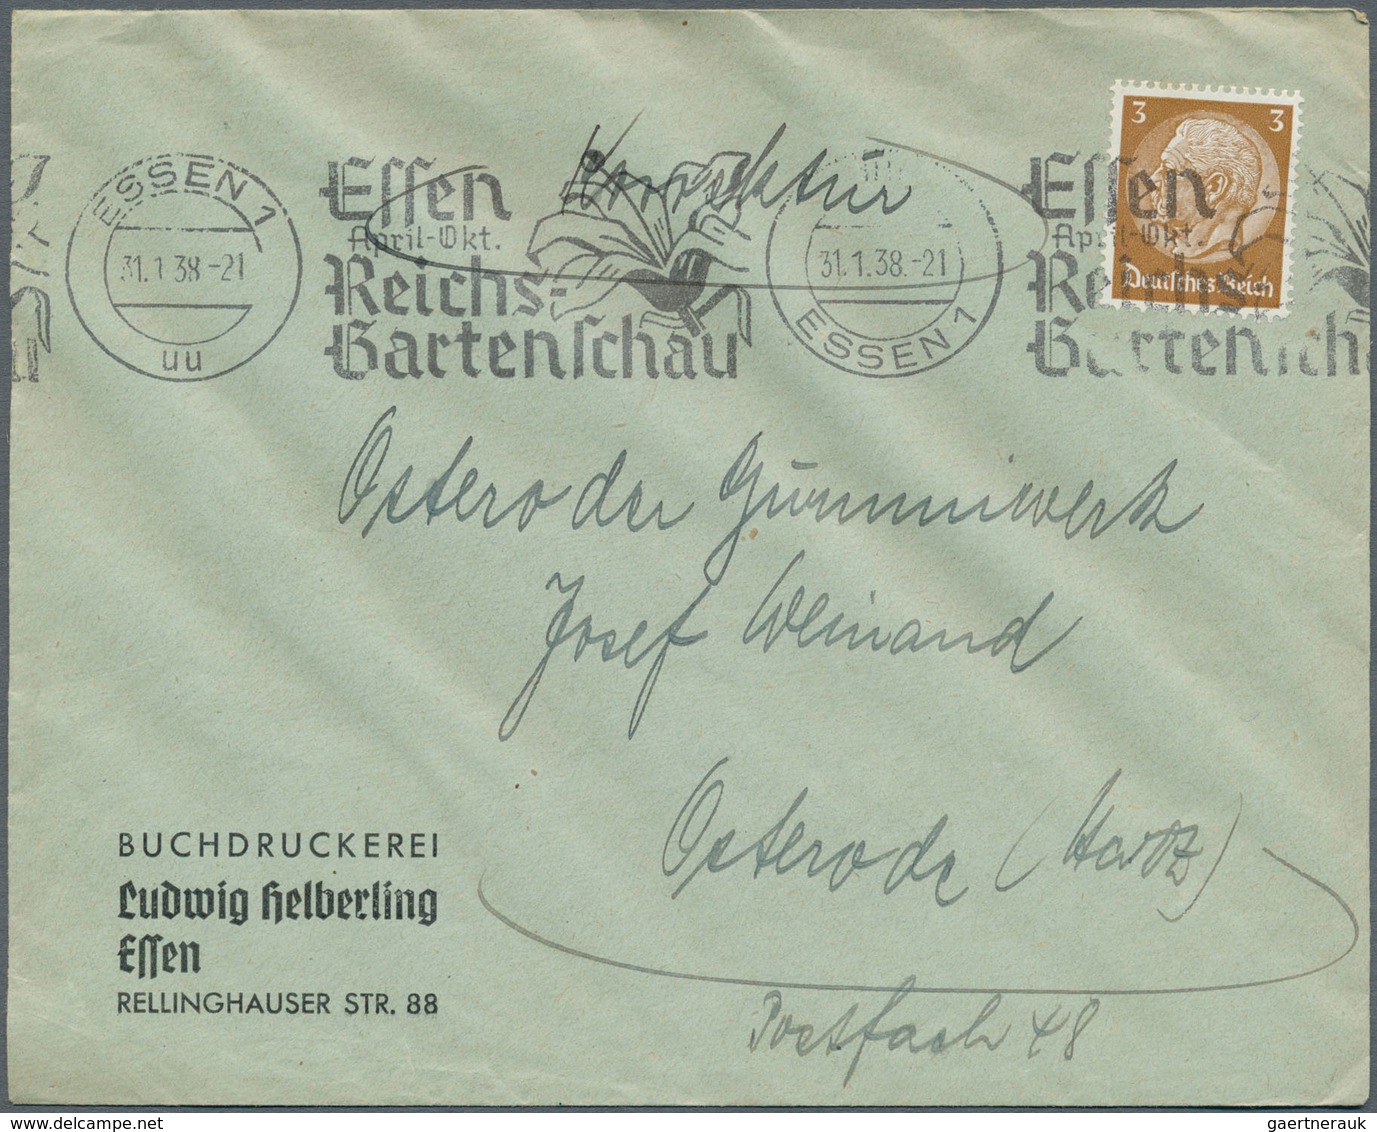 31049 Deutschland: 1880/1985, riesiger Posten von Briefen und Ganzsachen subsummiert unter dem Stichwort "